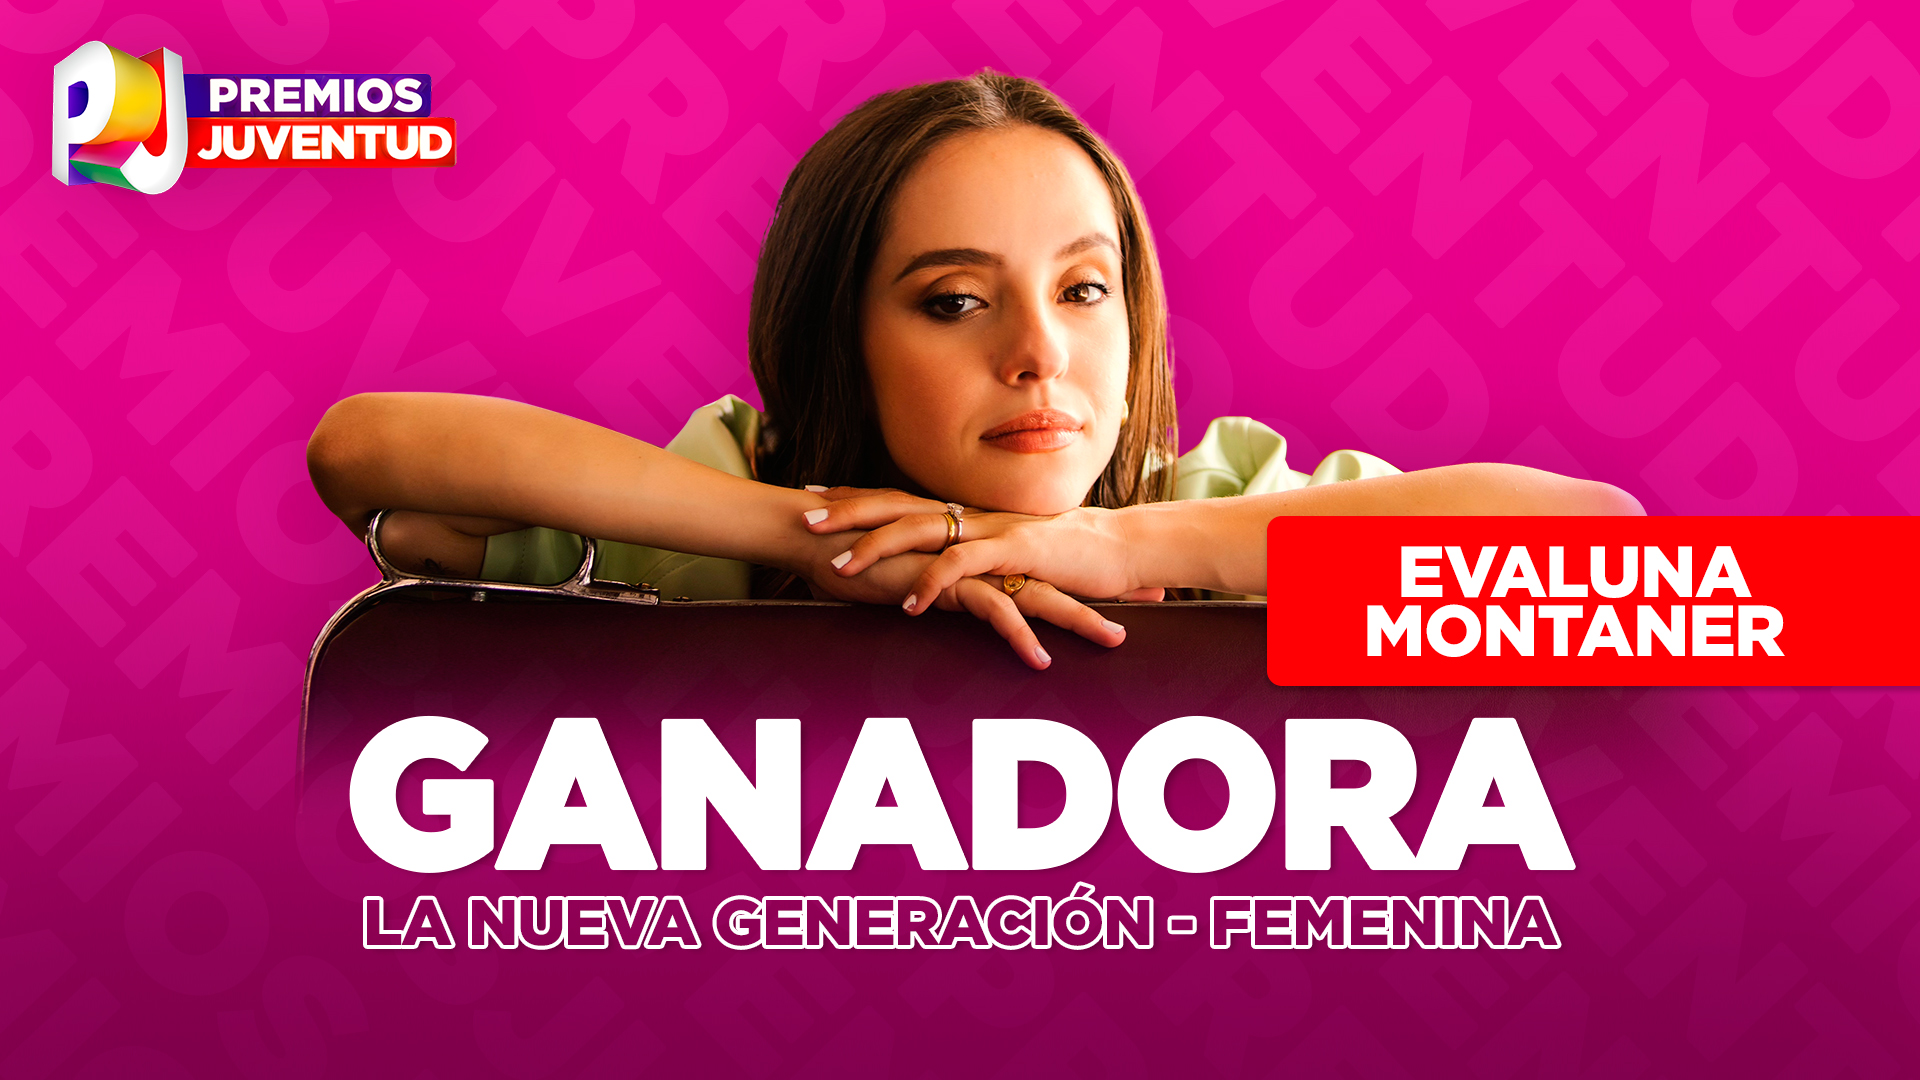 Premios Juventud on Twitter: "¡Felicidades, @Montanerevaluna! ganadora de La Nueva Generación - Femenina #PremiosJuventud 😍 🤩 https://t.co/a4FPD358y9" / Twitter